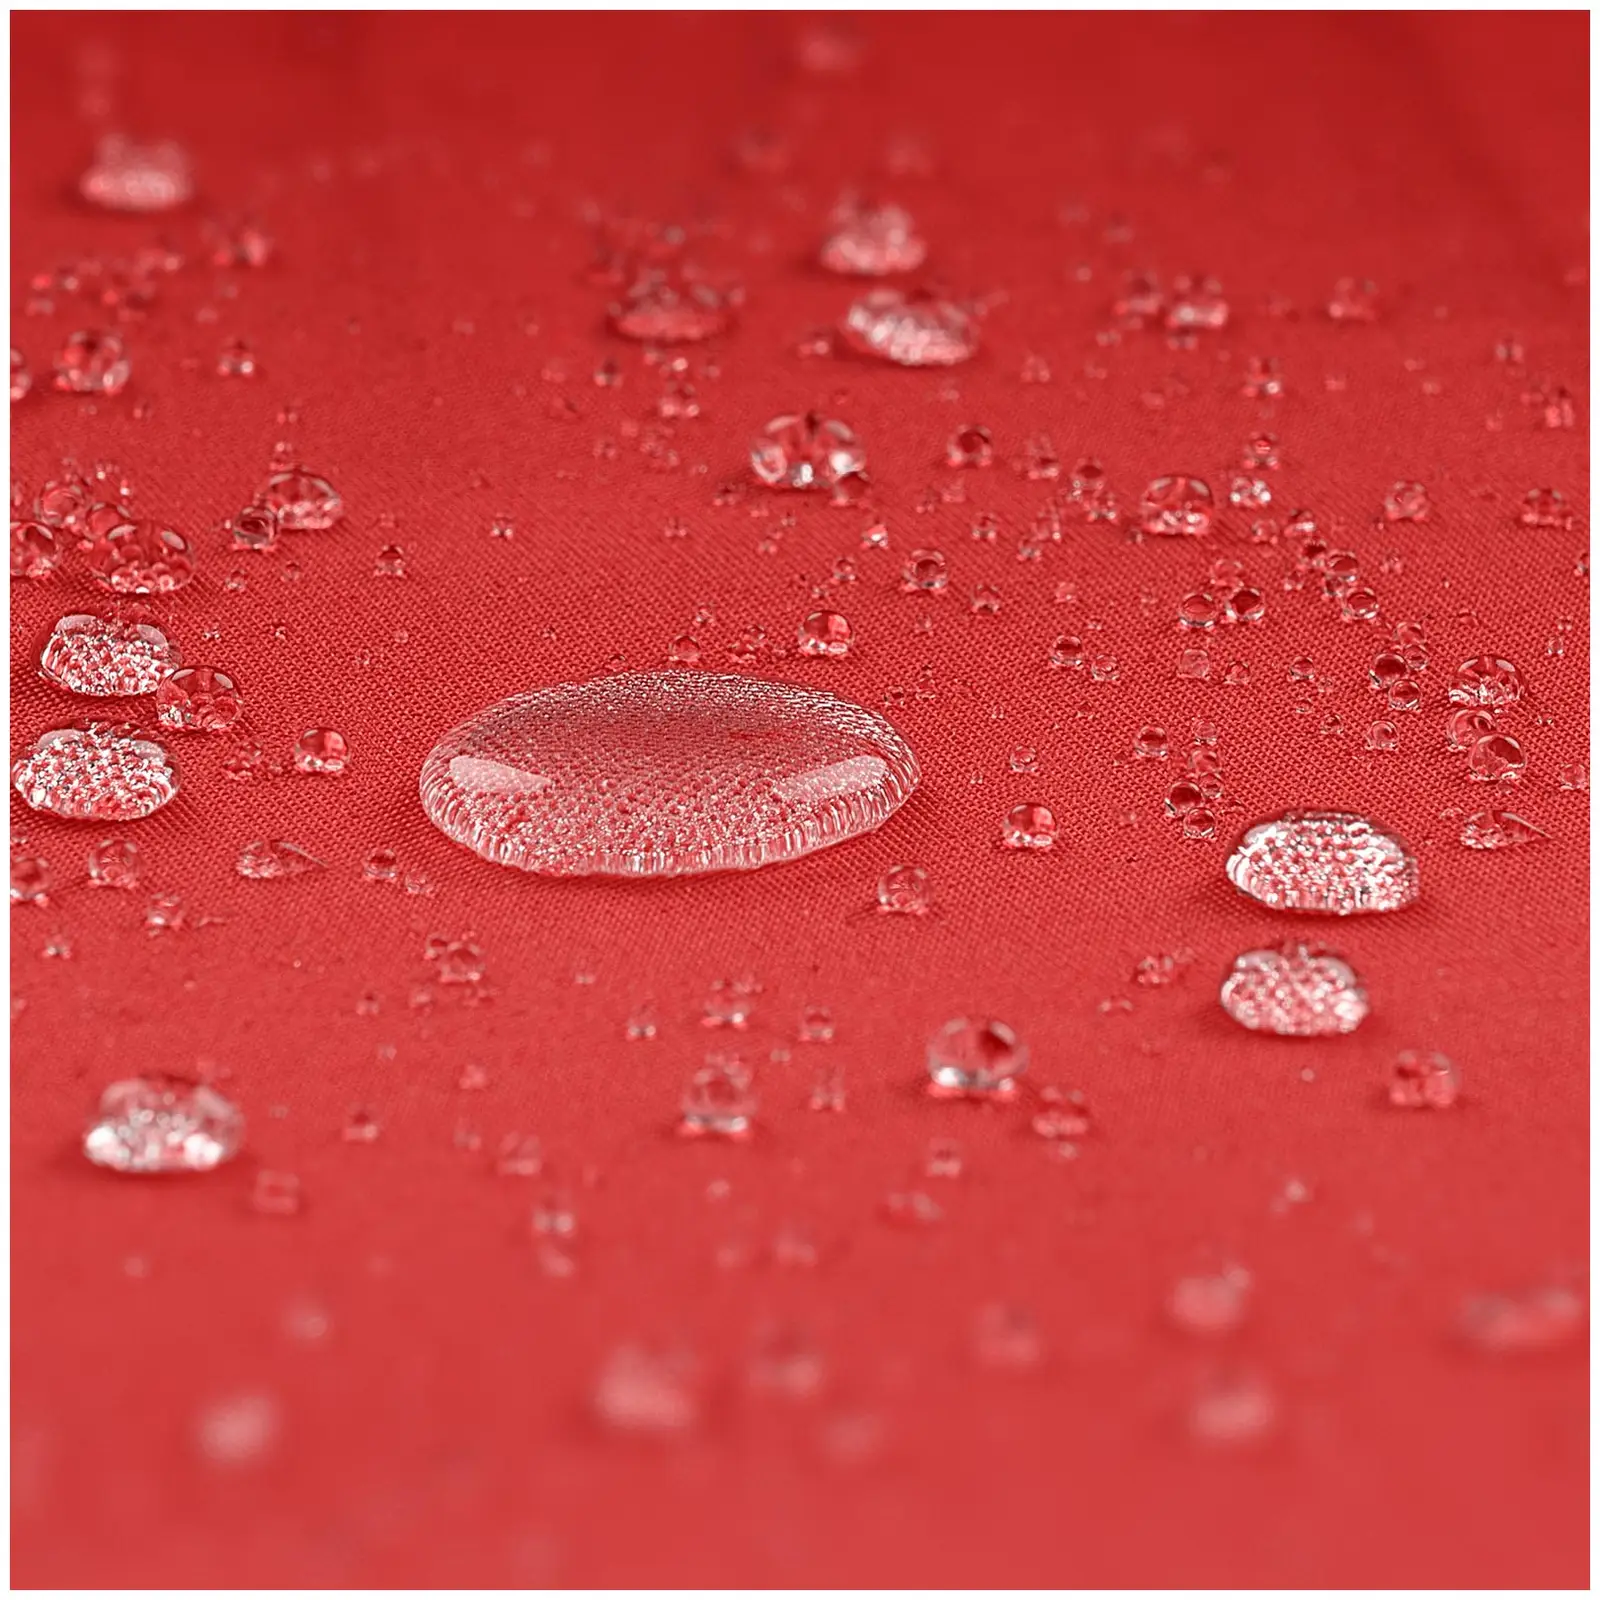 Sombrilla de semáforo - rojo - cuadrada - 250 x 250 cm - inclinable